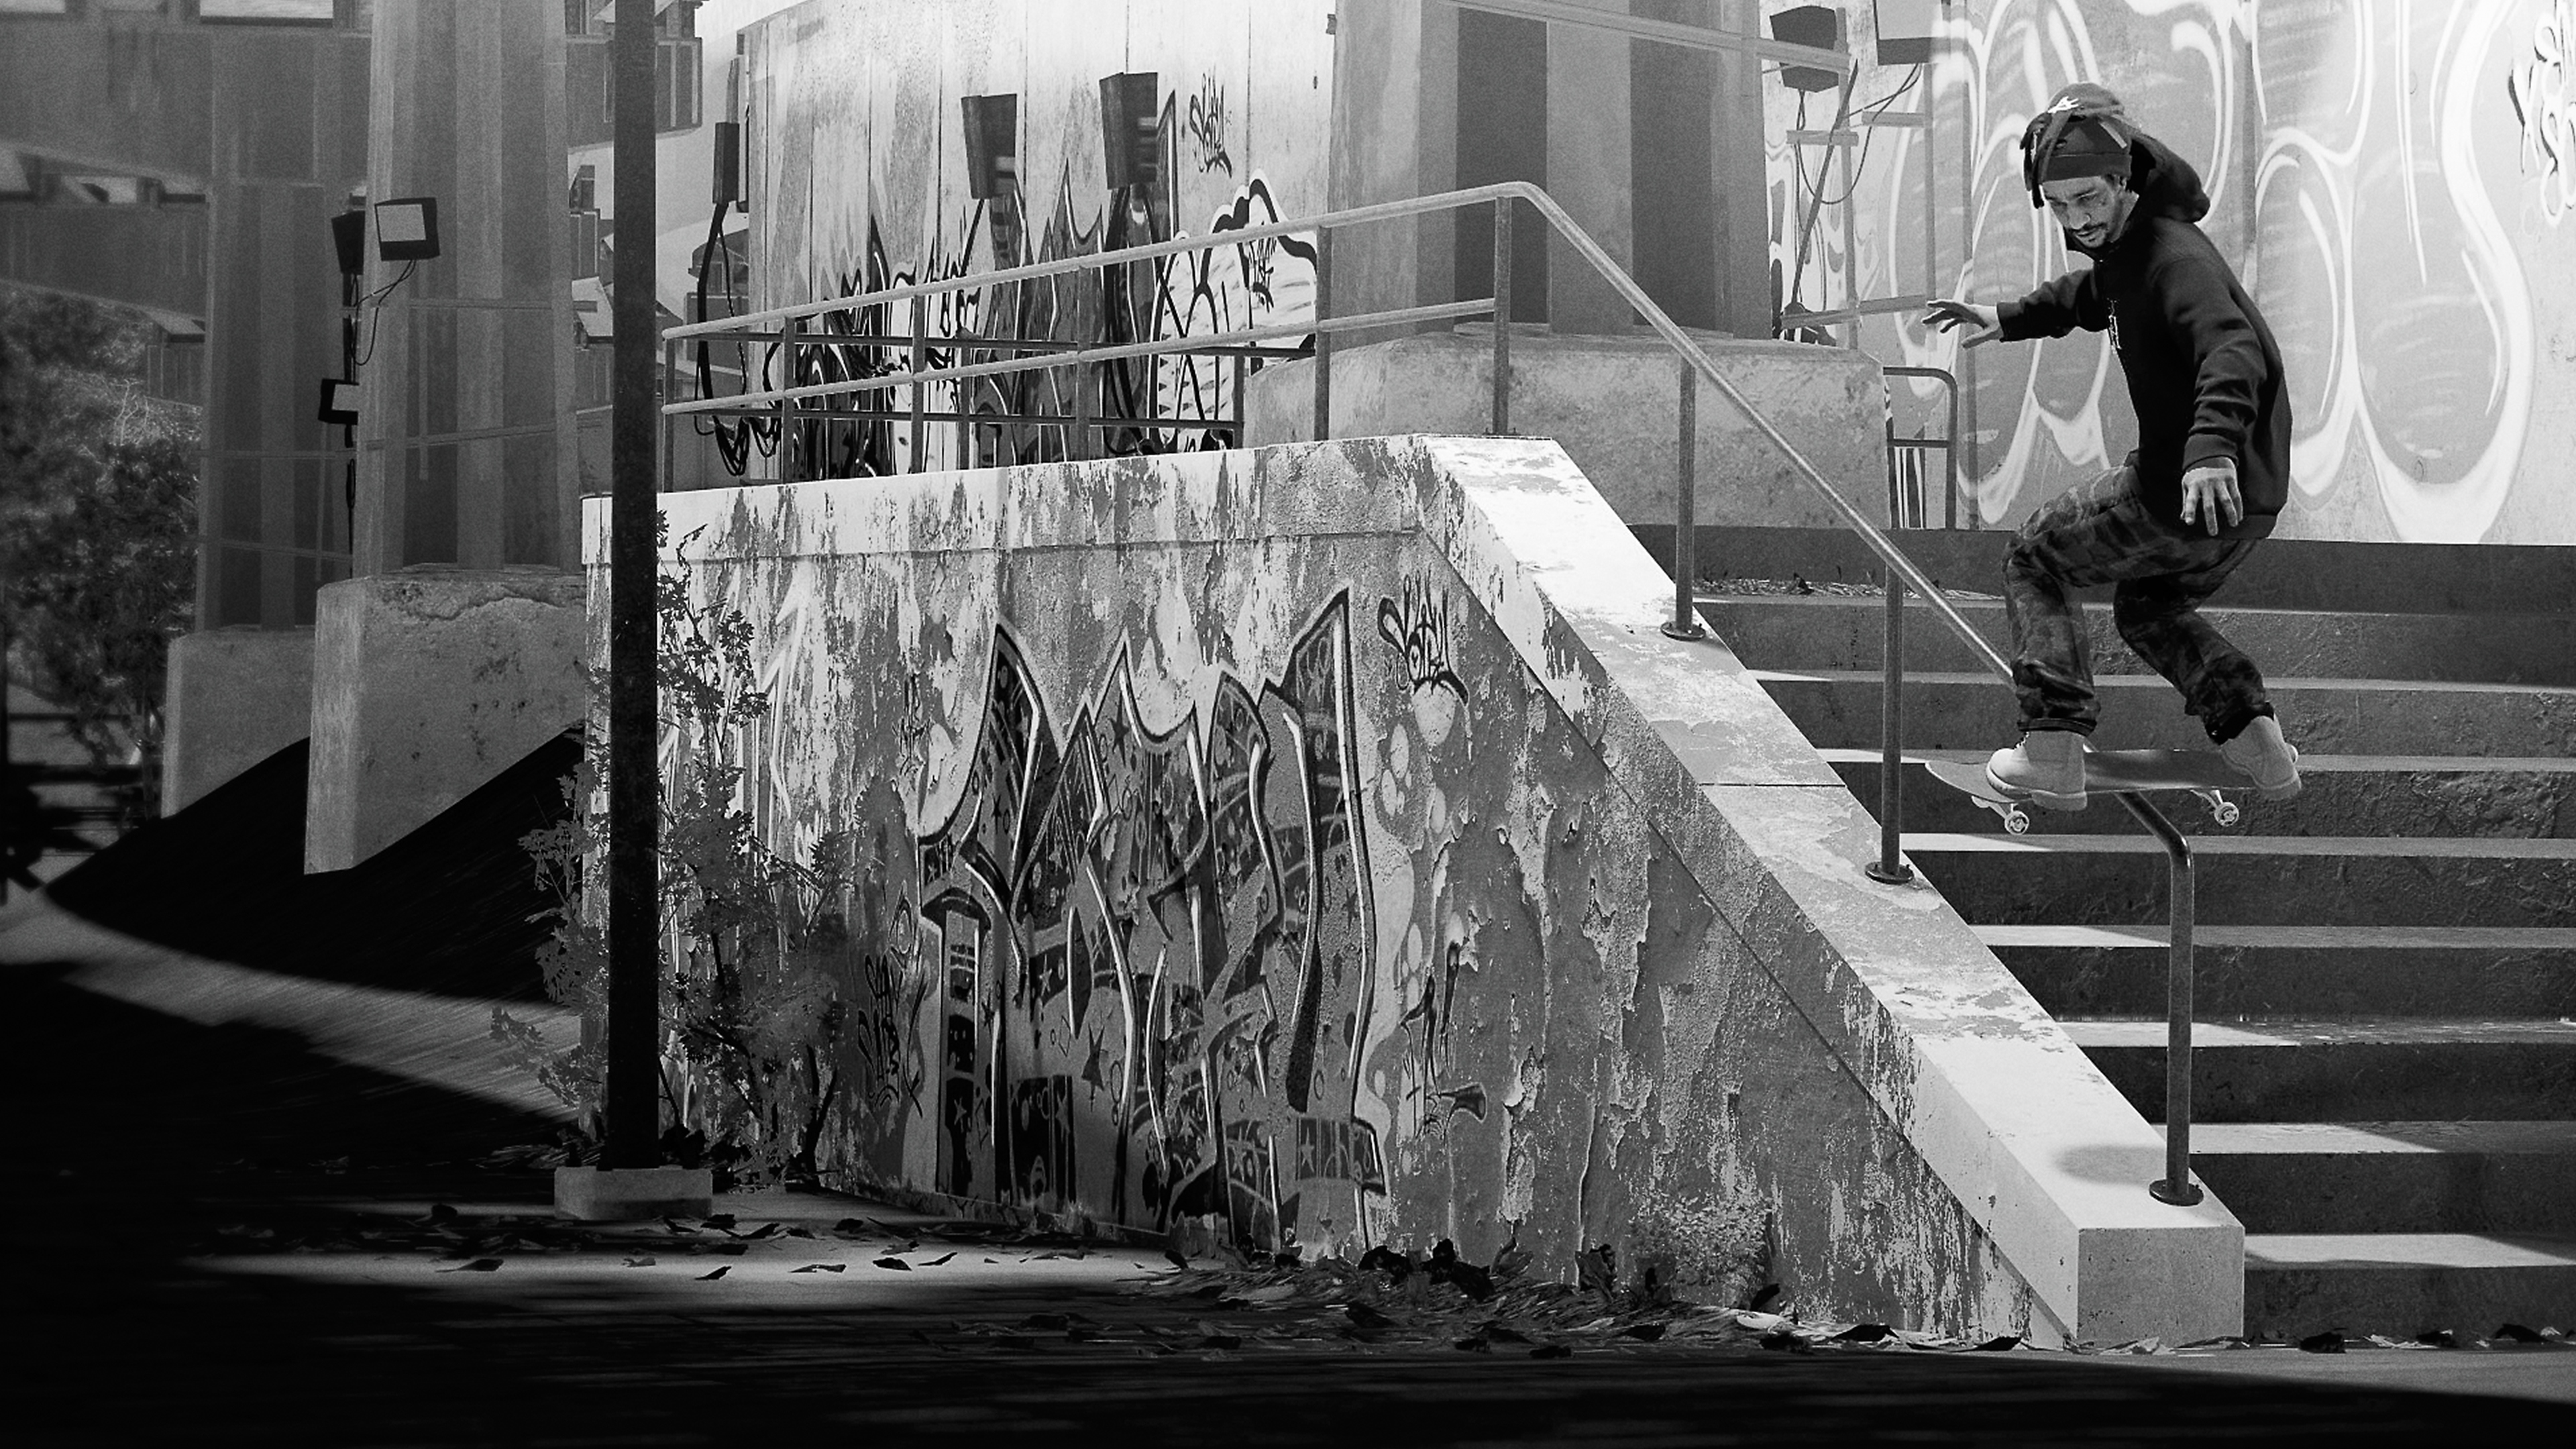 Session: Skate Sim - Capture d'écran montrant une scène en blanc et noir d'un skateboarder faisant un grind sur une rambarde